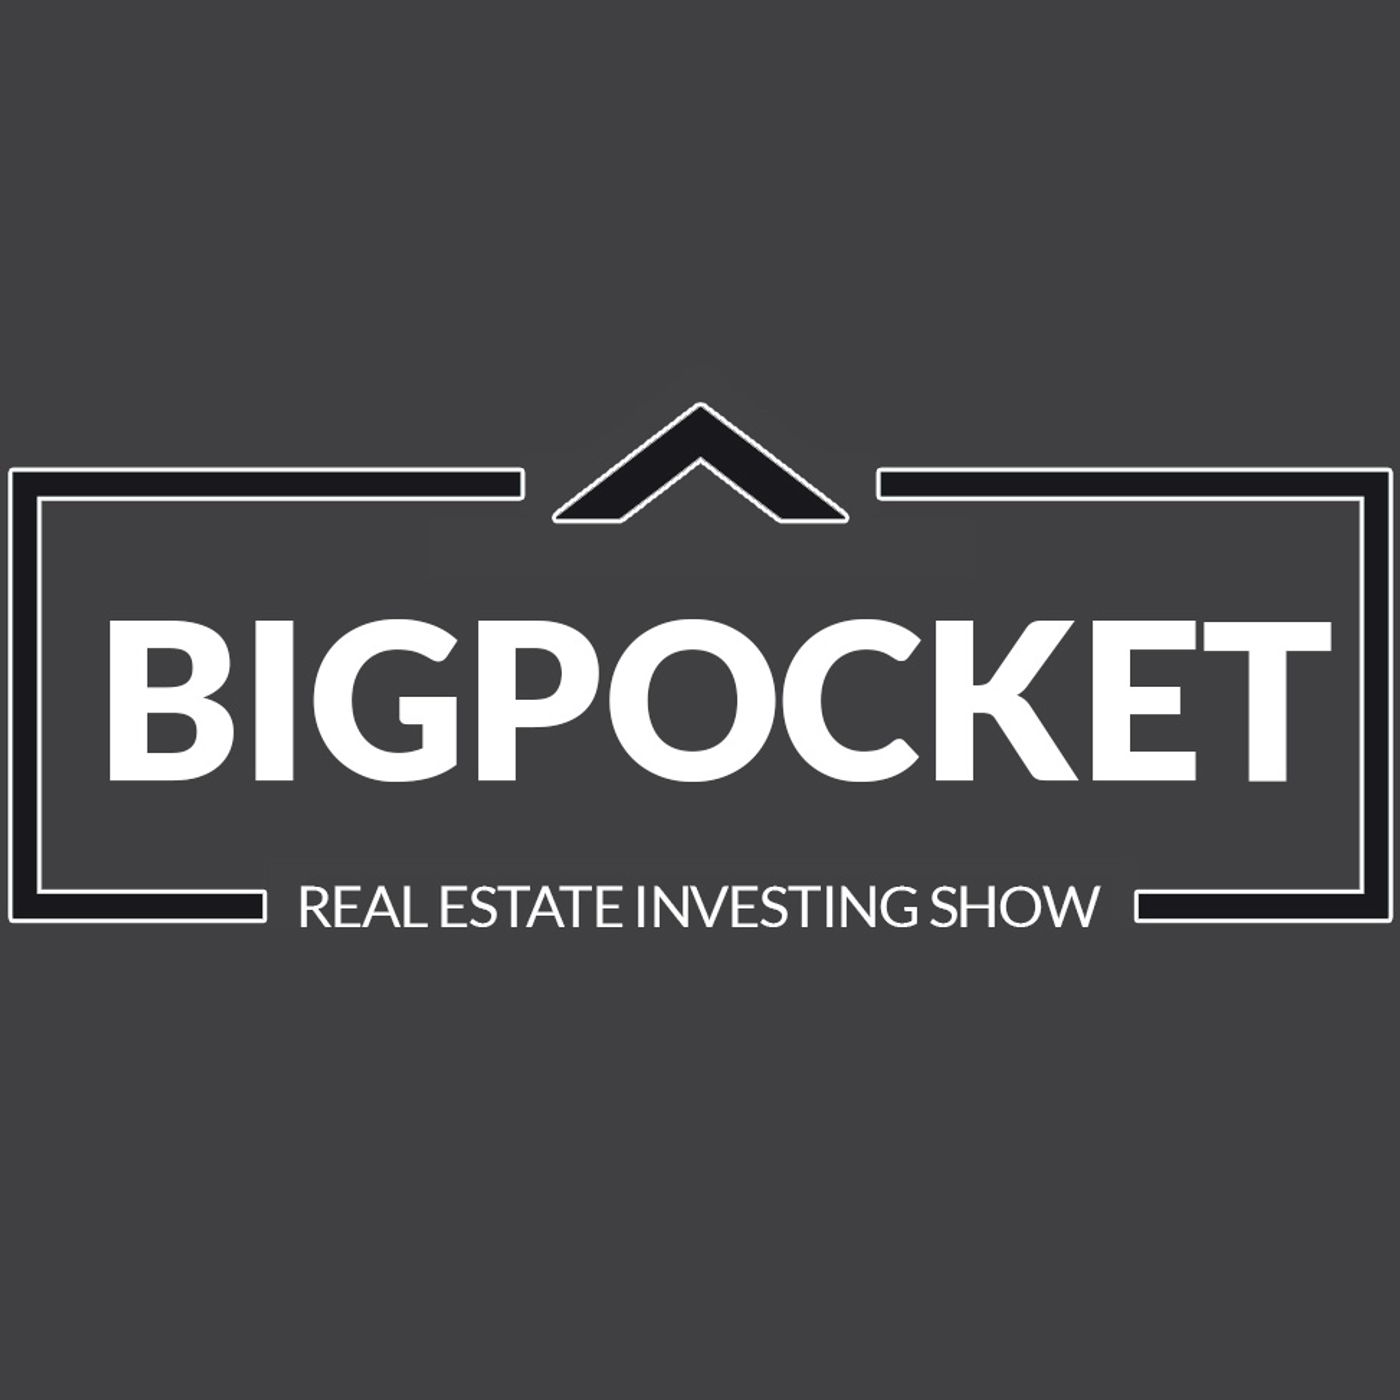 BIGPocket Real Estate Investing Show